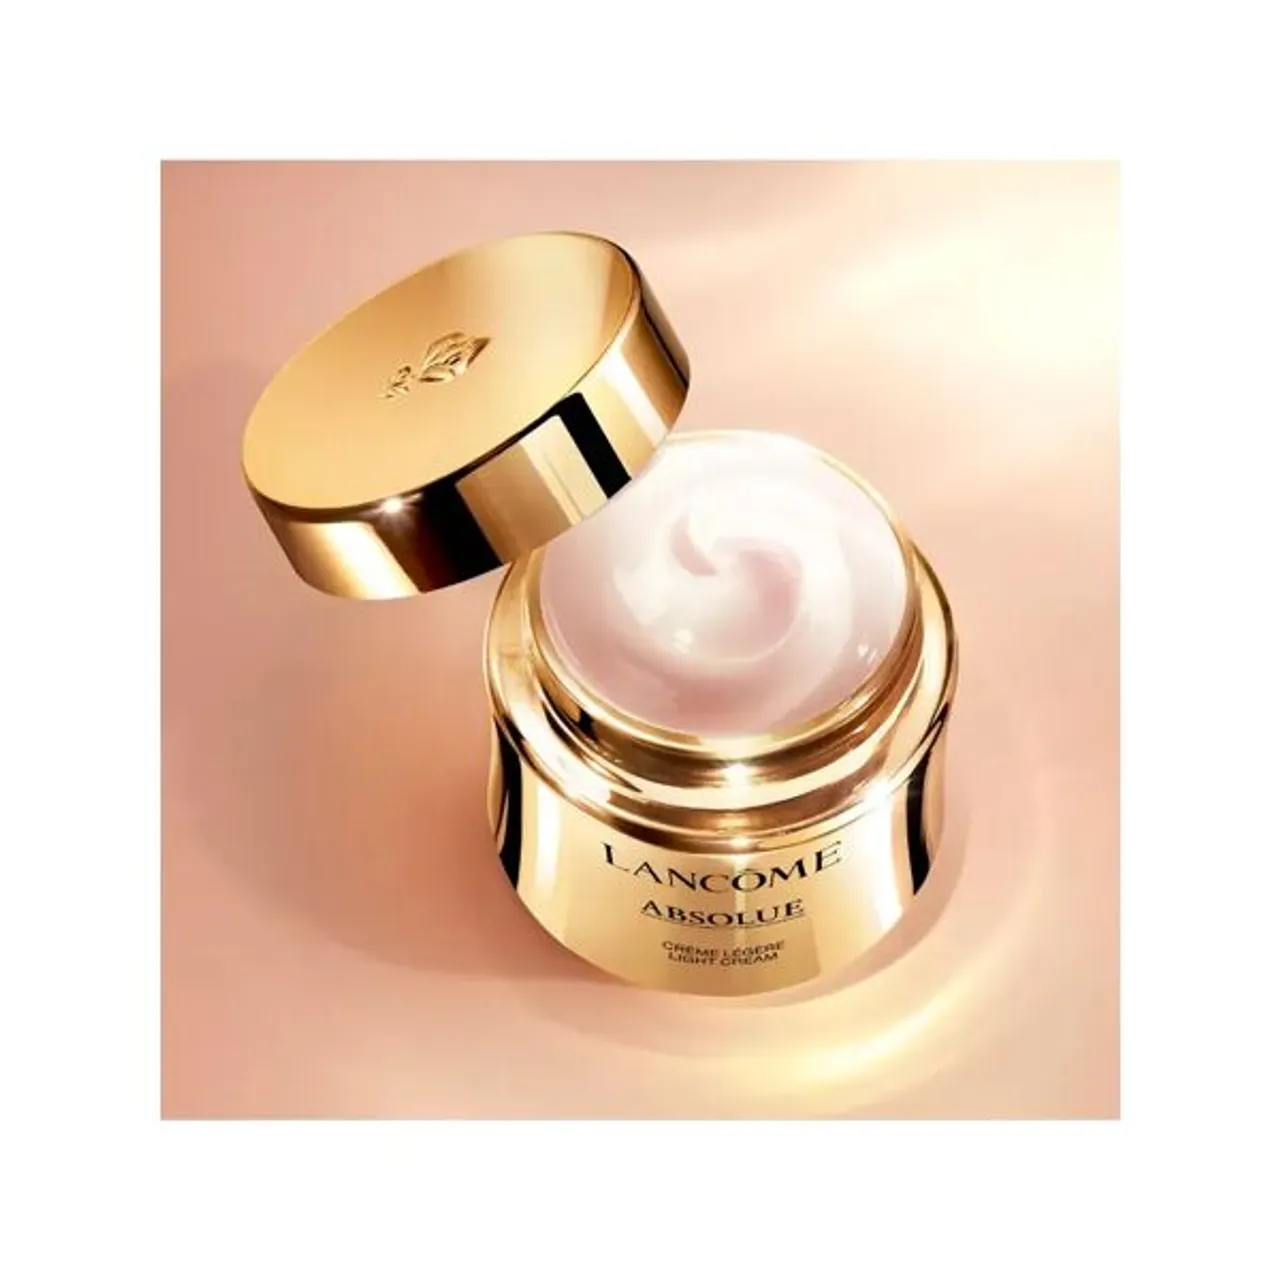 LancÃ´me Absolue Light Cream, 60ml - Unisex - Size: 60ml